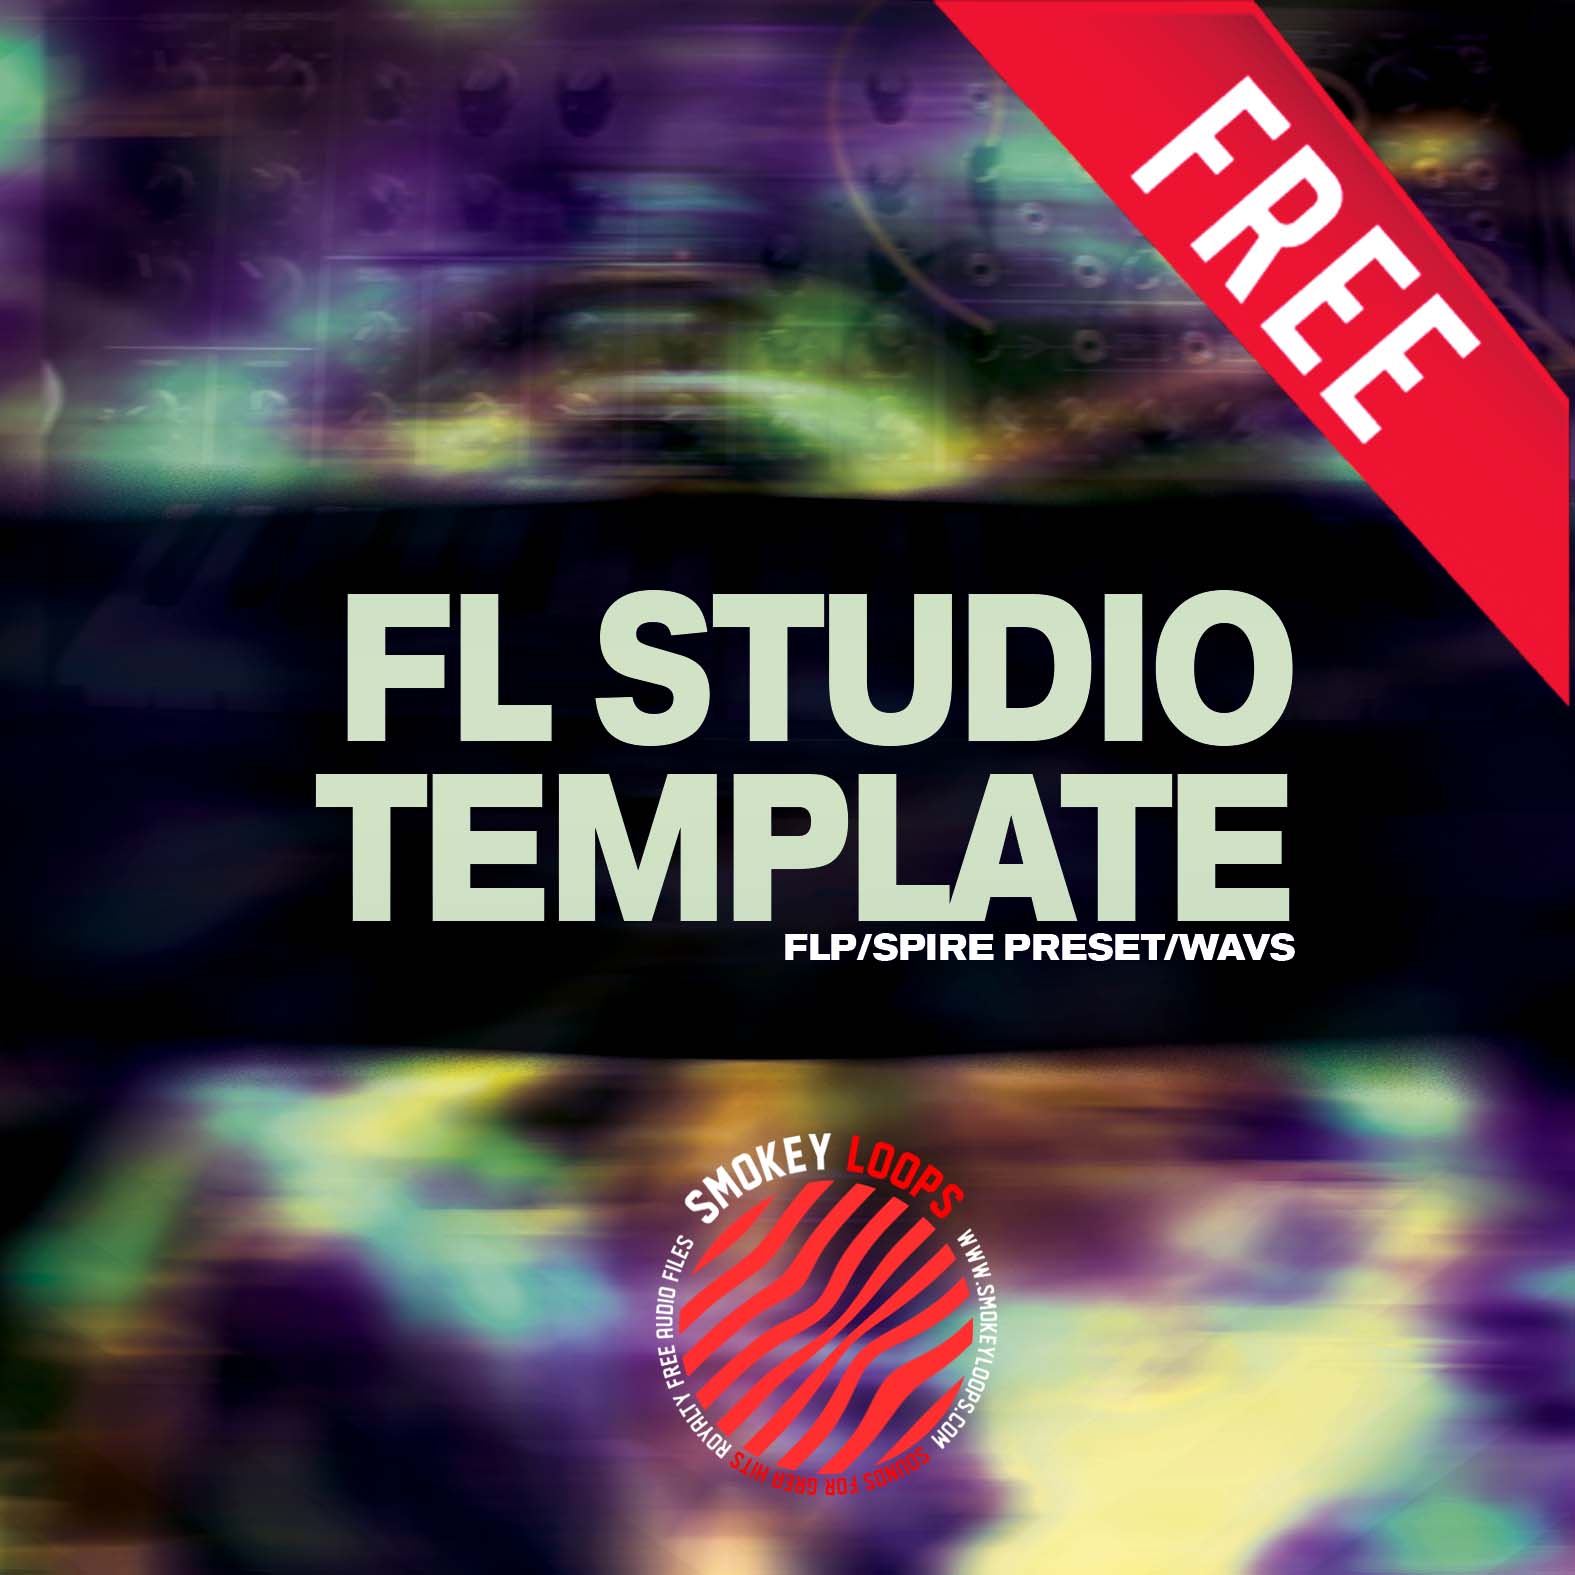 kickstart fl studio free download